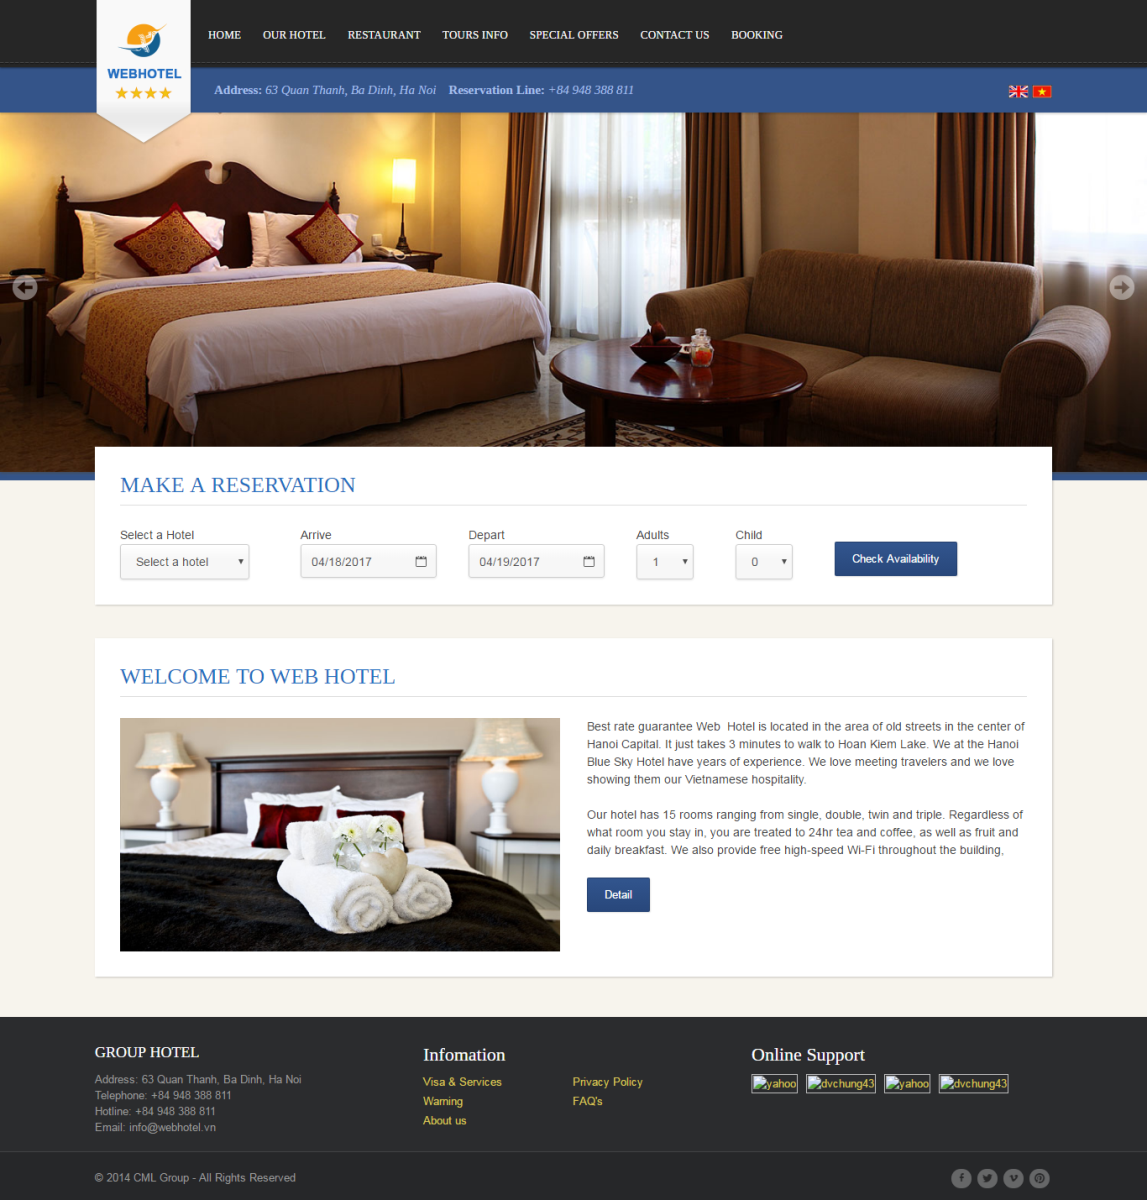 Thiết kế website khách sạn theo xu hướng hình ảnh trực quan